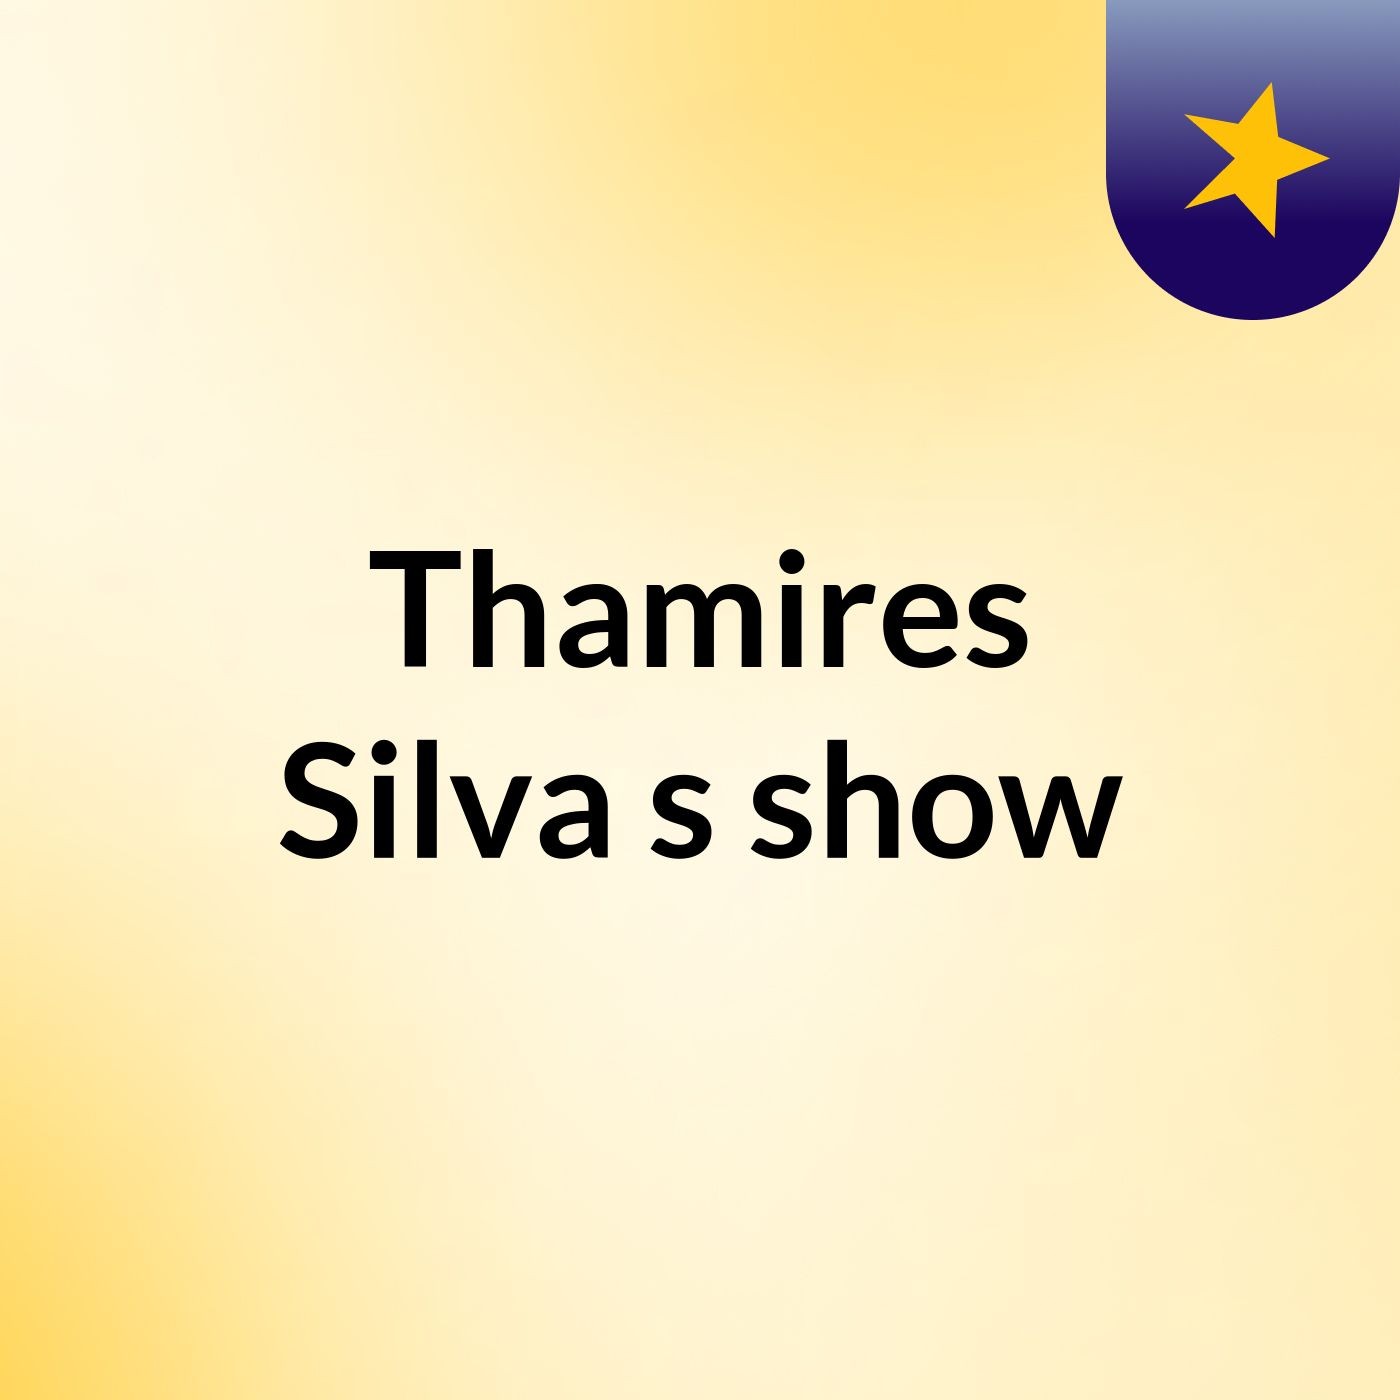 Thamires Silva's show